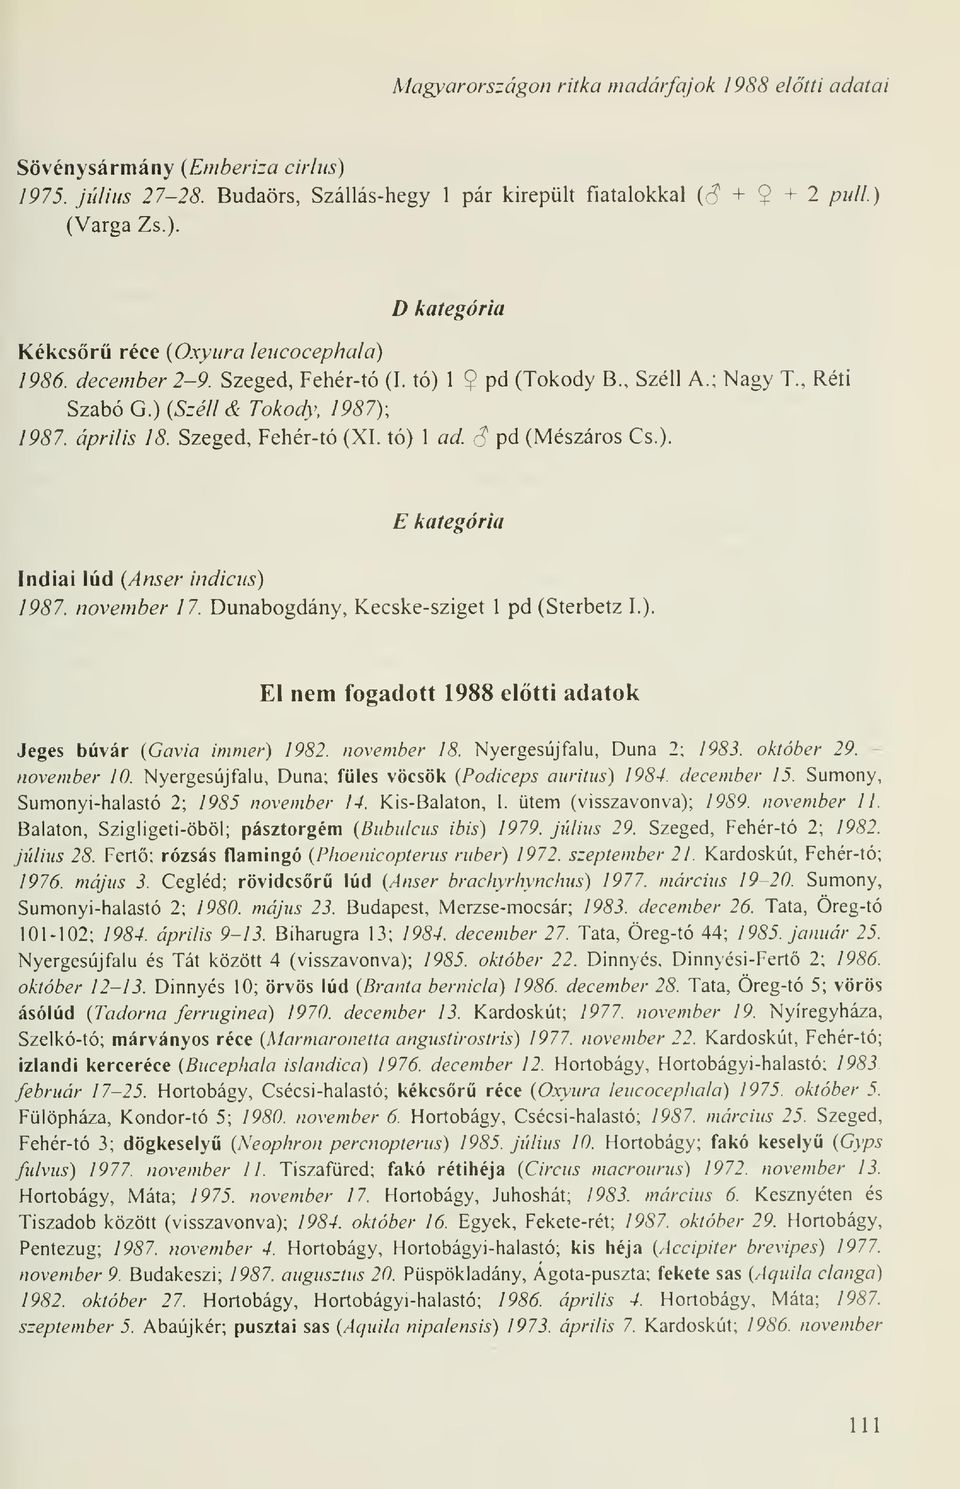 november 17. Dunabogdány, Kecske-sziget 1 pd (Sterbetz I.). El nem fogadott 1988 eltti adatok Jeges búvár (Gavia immer) 1982. november 18. Nyergesújfalu, Duna 2; 1983. október 29. - november 10.